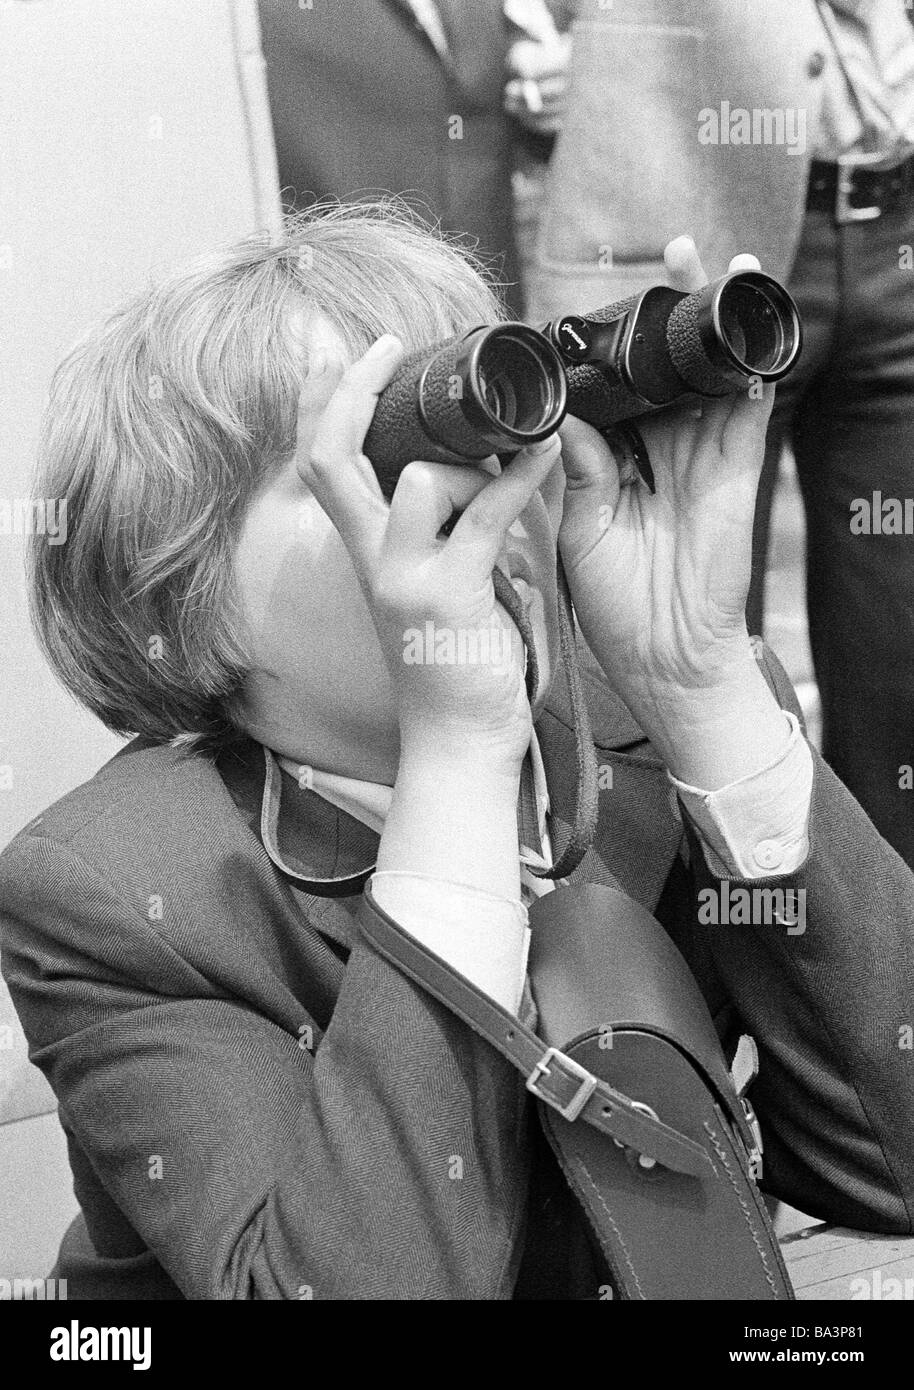 Negli anni settanta, foto in bianco e nero, persone boy guarda attraverso un binocolo, belvedere, la vista vale la pena vedere, camicia, di età compresa tra i 10 e i 12 anni Foto Stock